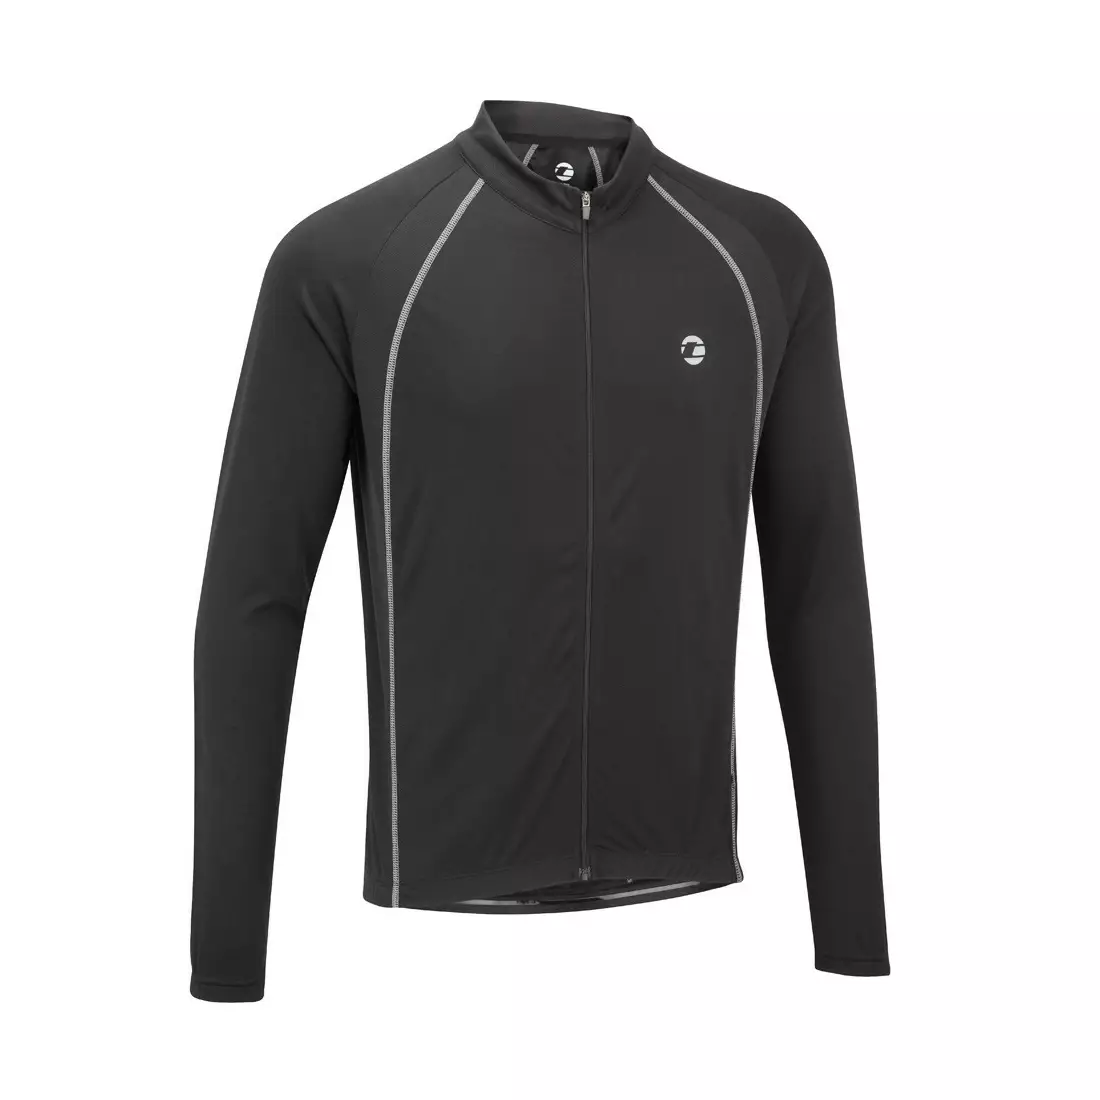 TENN OUTDOORS Pánsky cyklistický dres Sprint s dlhým rukávom, čierny